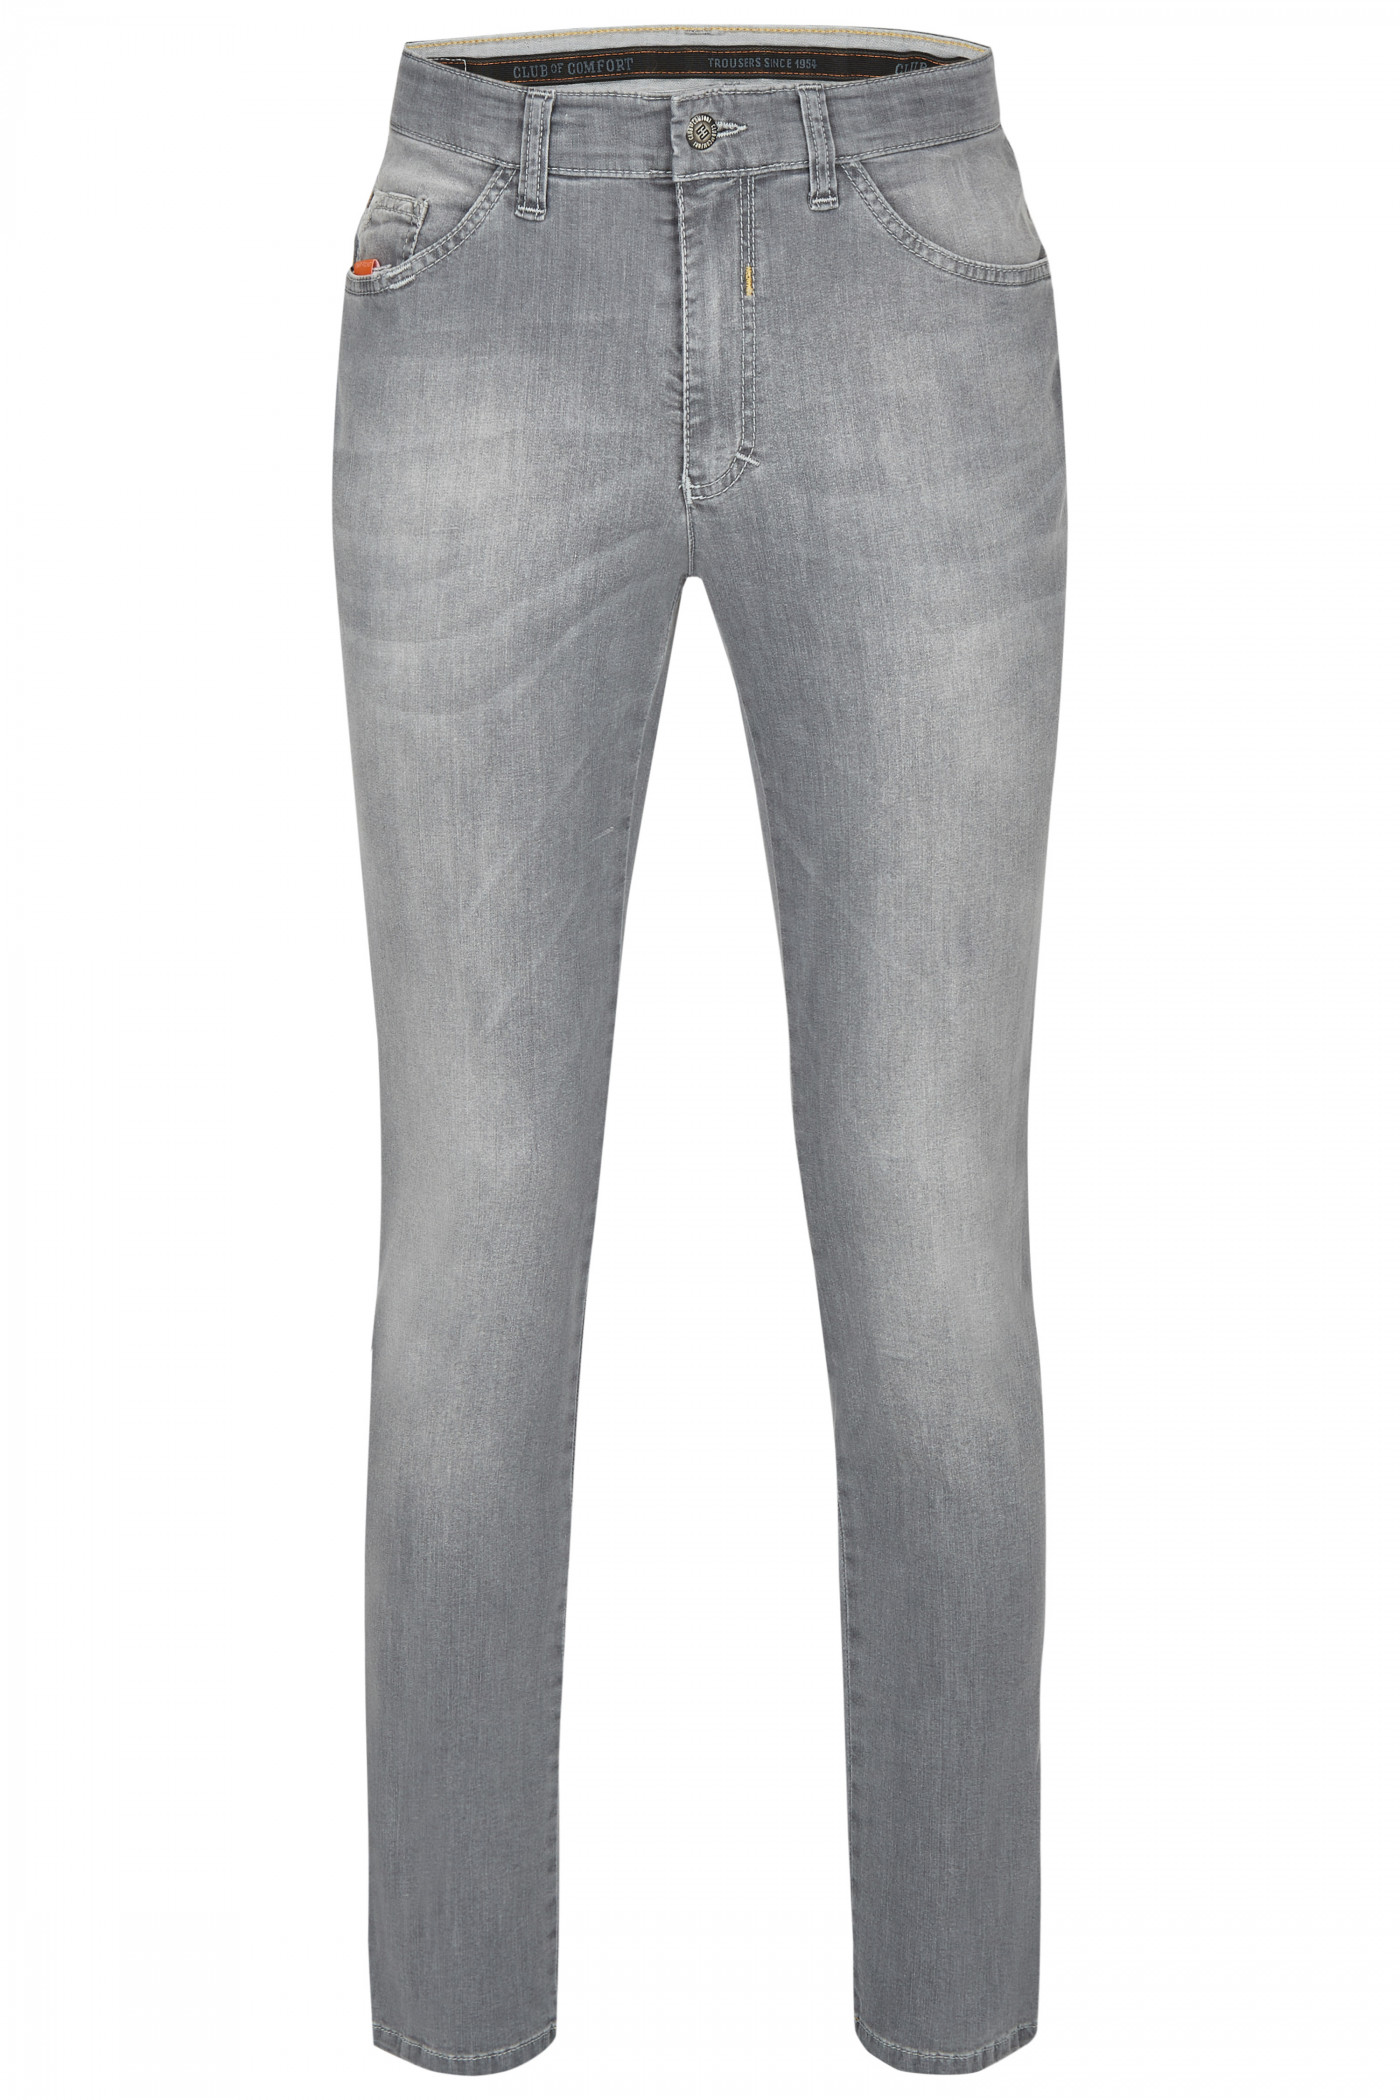 infrastructuur spoel Schandelijk Jeans 5 Pocket High Stretch Licht Grijs - Harris Tweed Shop